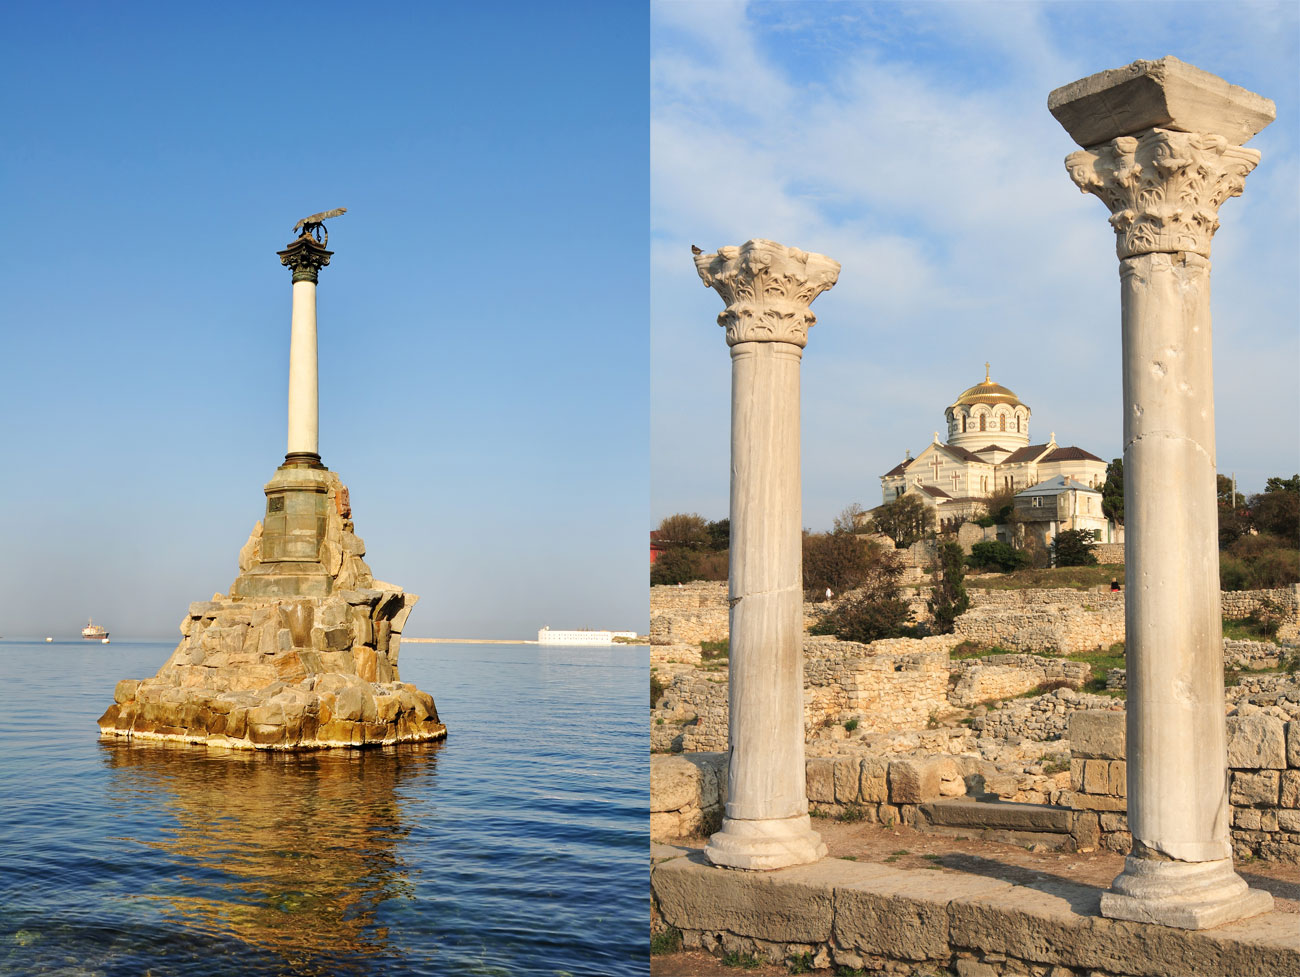 La città di Sebastopoli, in Crimea, culla della Flotta russa del Mar Nero, ha una storia lunga e turbolenta. I suoi simboli principali sono il monumento alle navi affondate e le rovine dell’antica città di Cherson